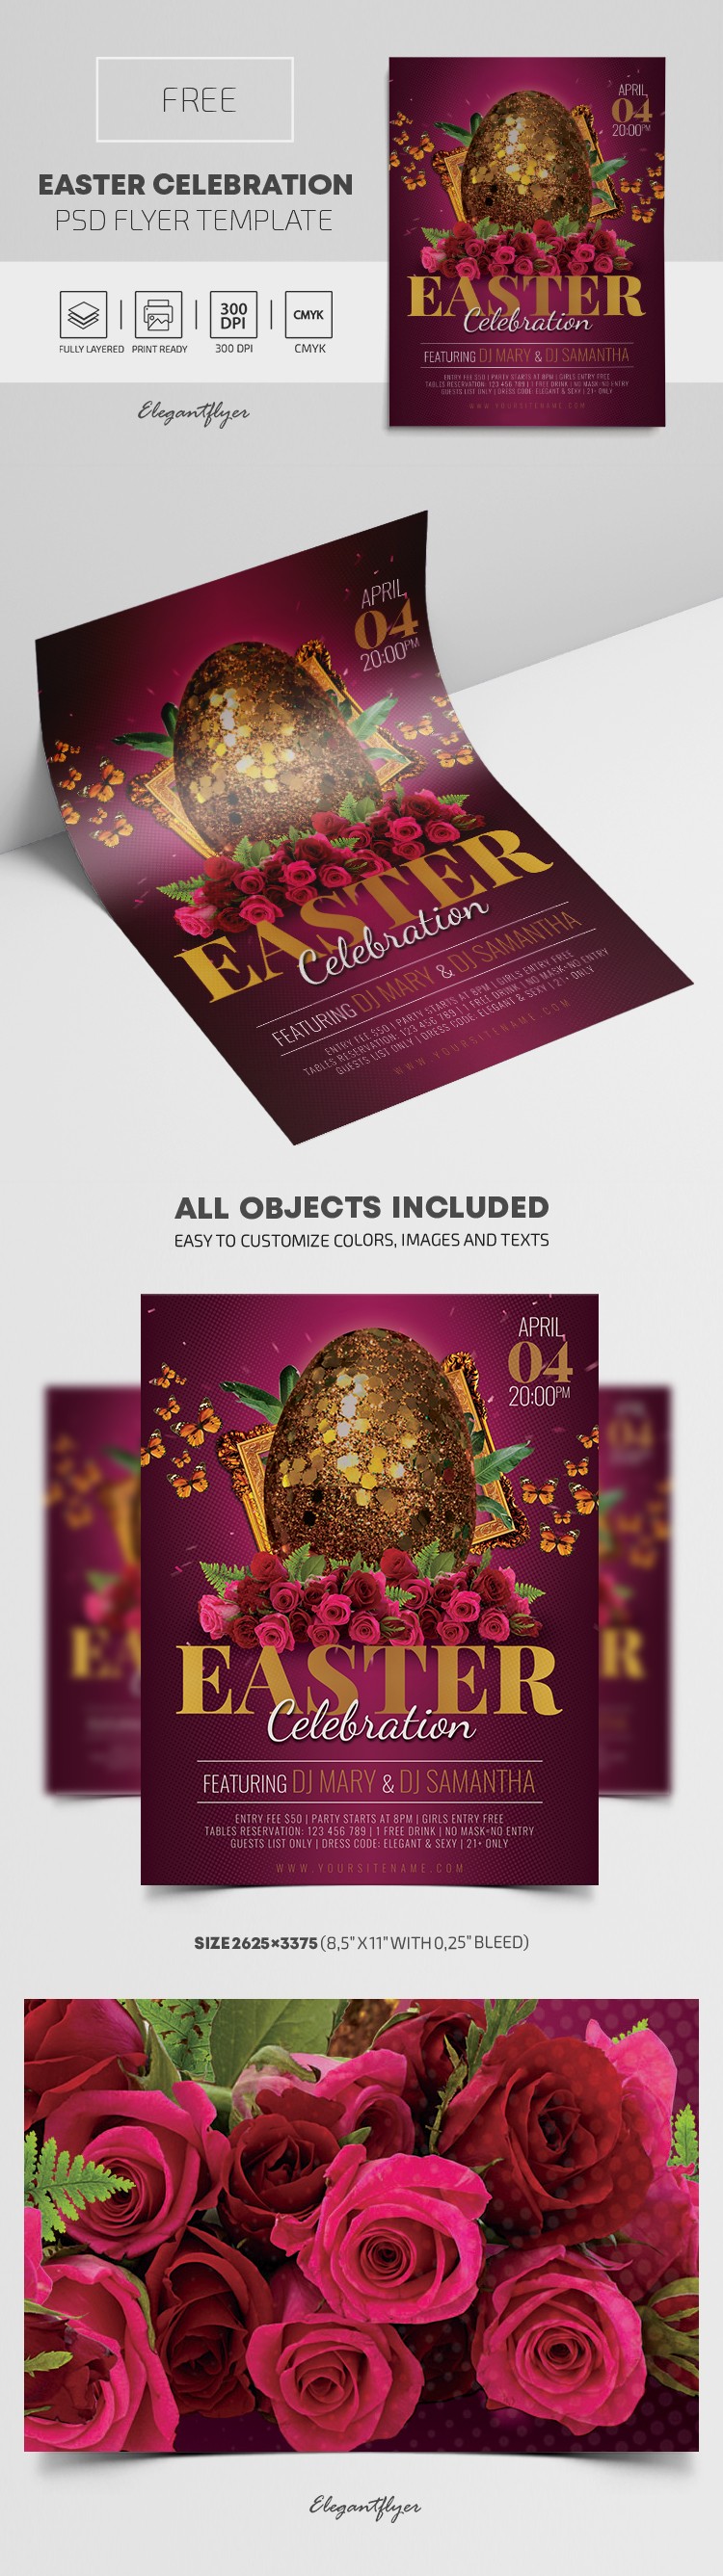 Easter Celebration Flyer by ElegantFlyer